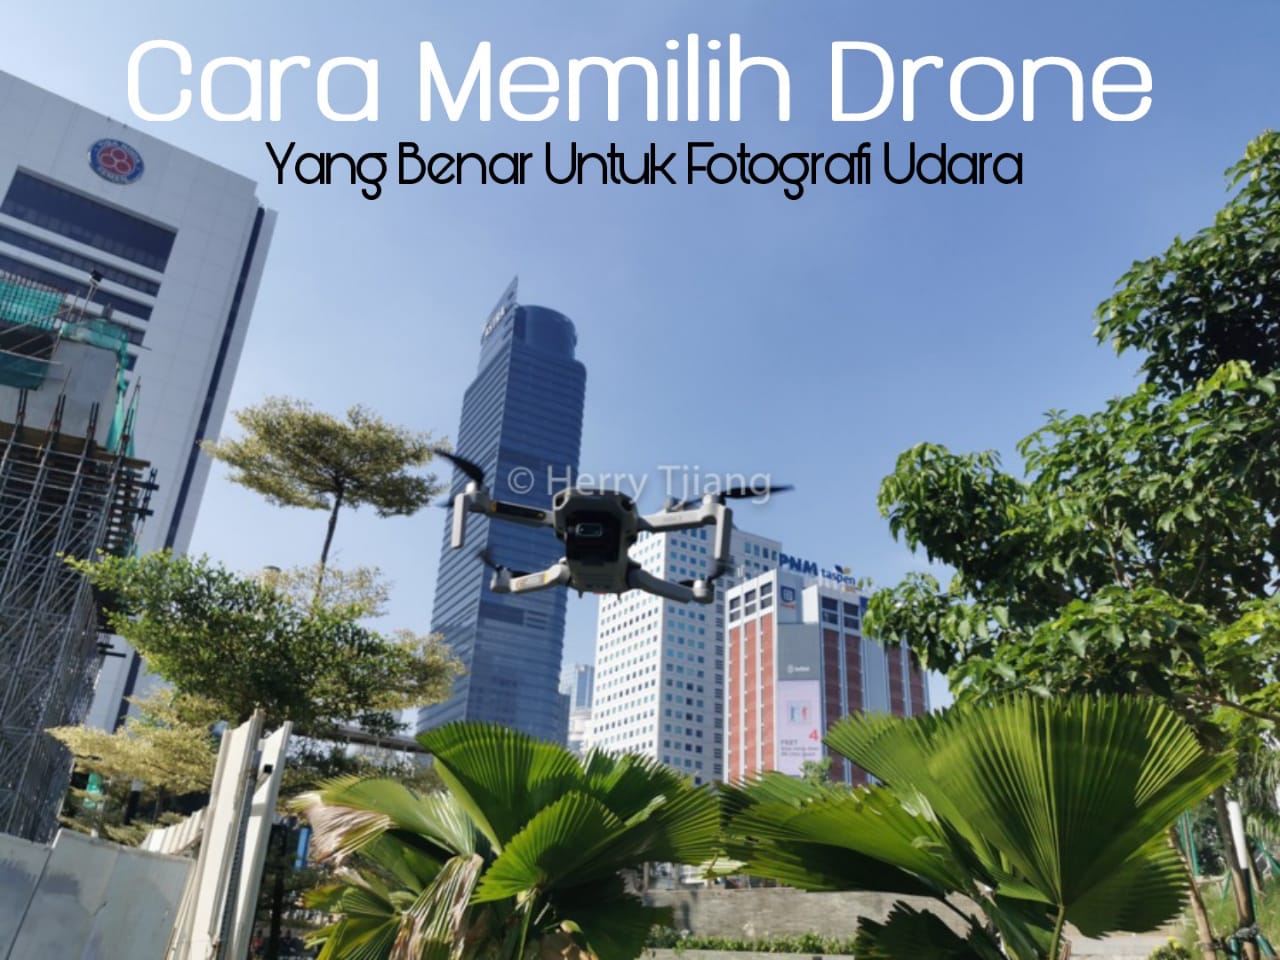 Drone Murah Waktu Terbang Lama Jsp Jakarta School Of Photography